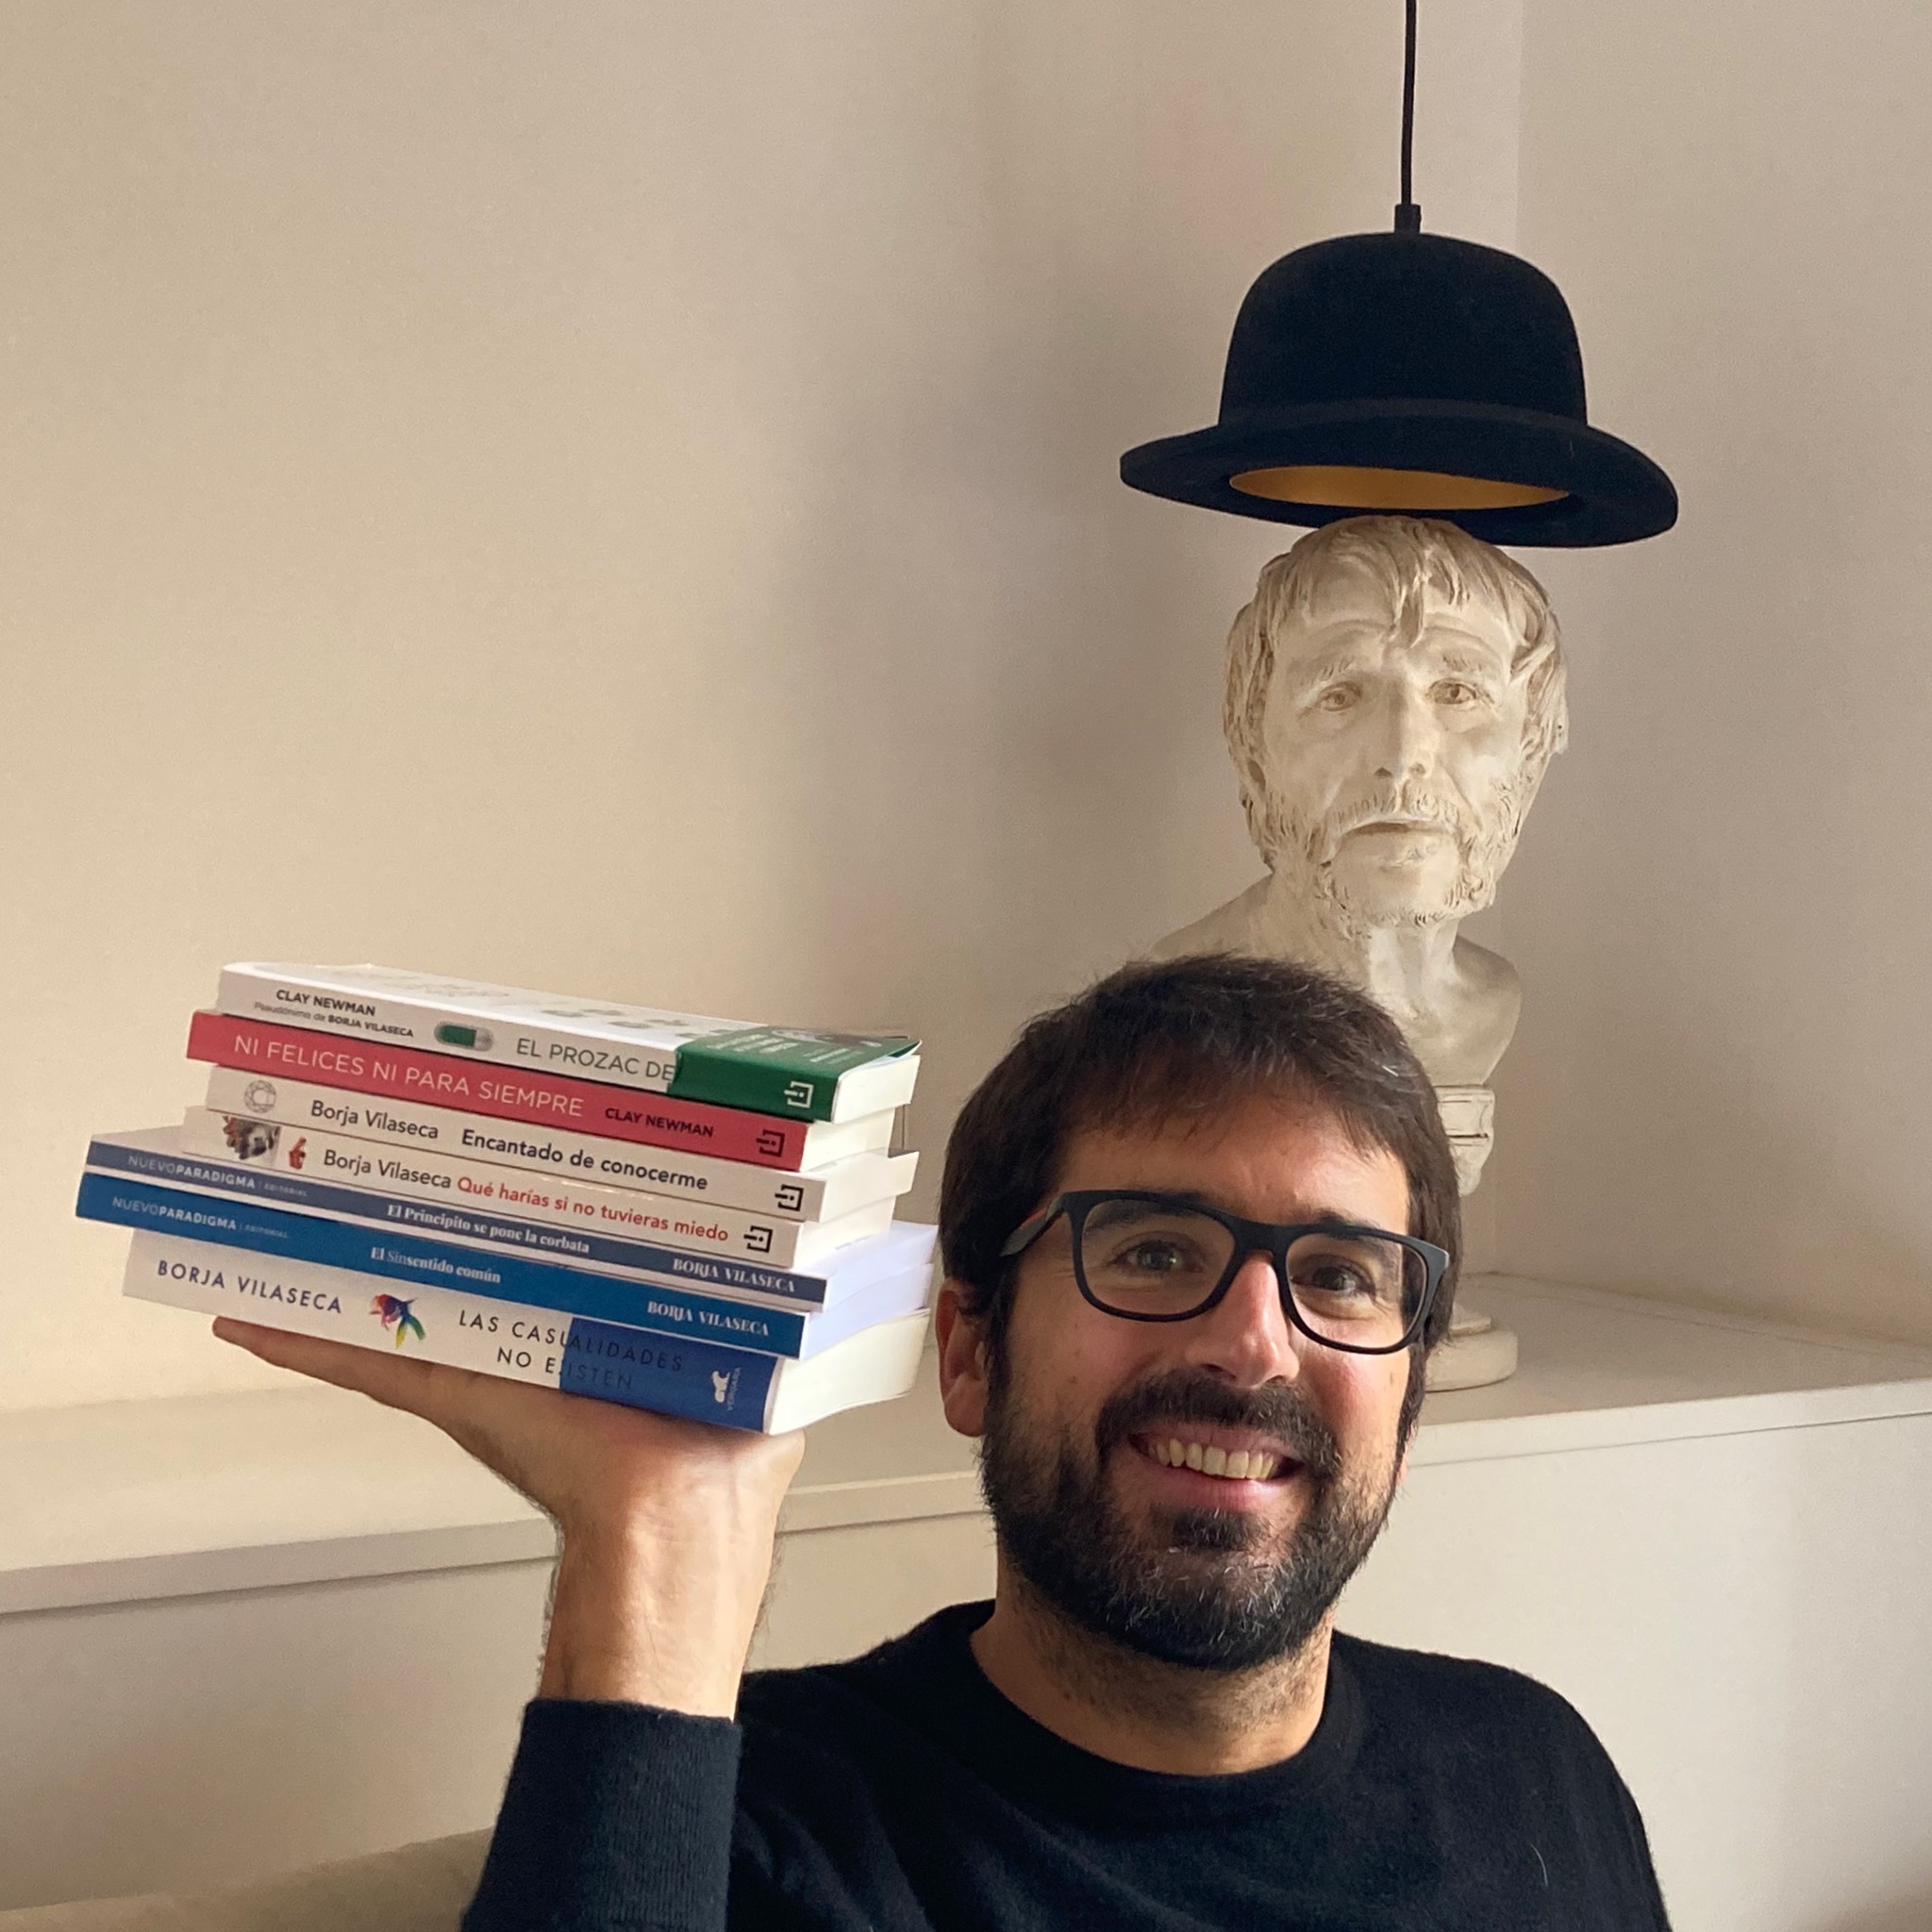 Borja Vilaseca on X: Muchos me preguntáis si mis libros se tienen